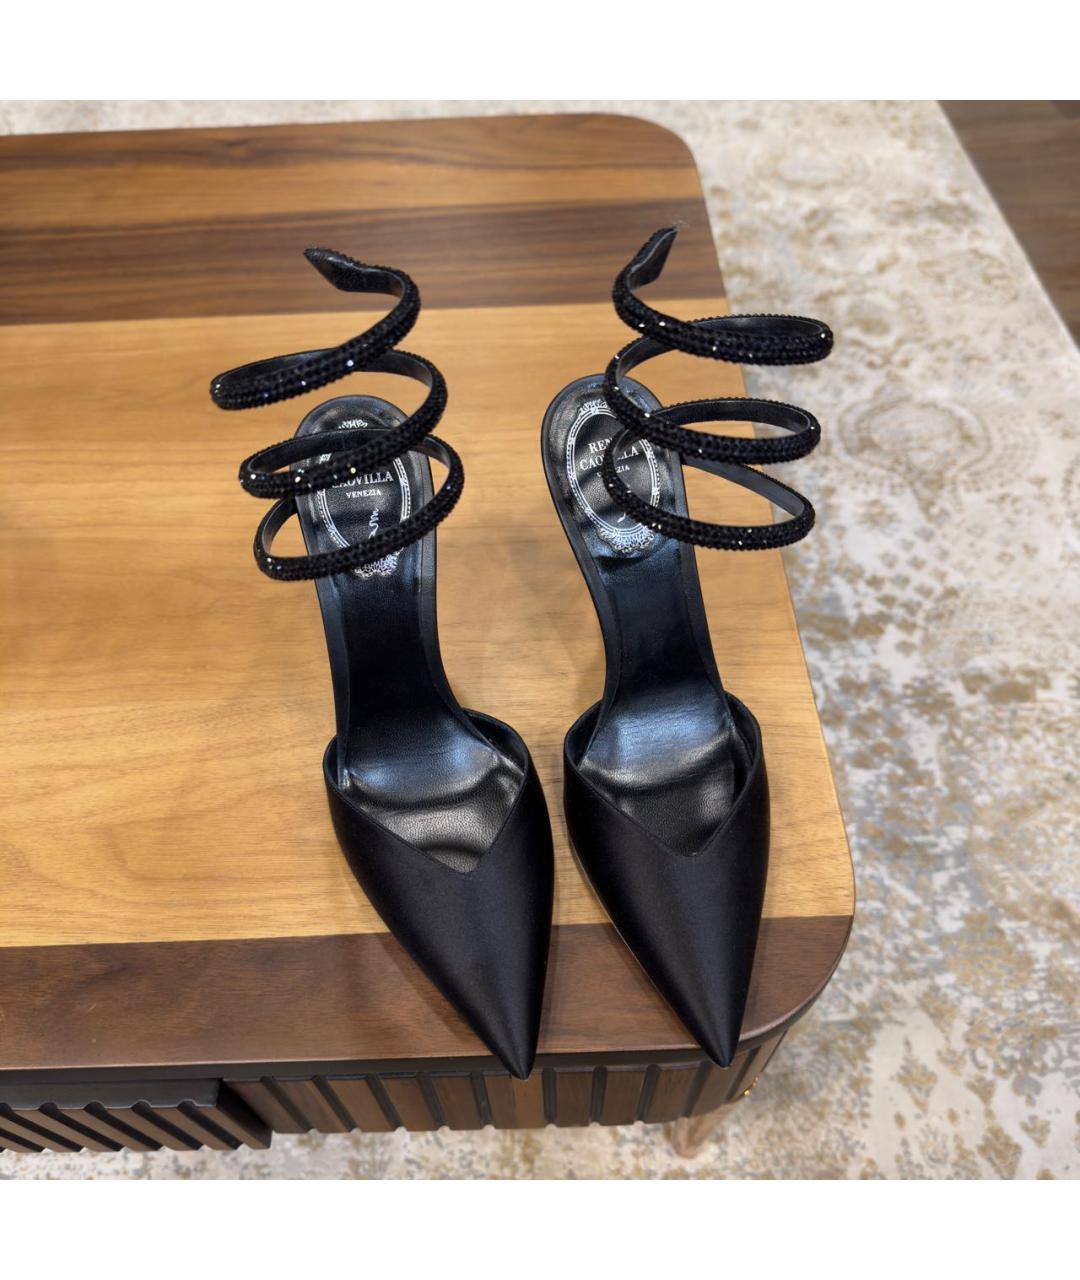 RENE CAOVILLA Черные текстильные туфли, фото 3